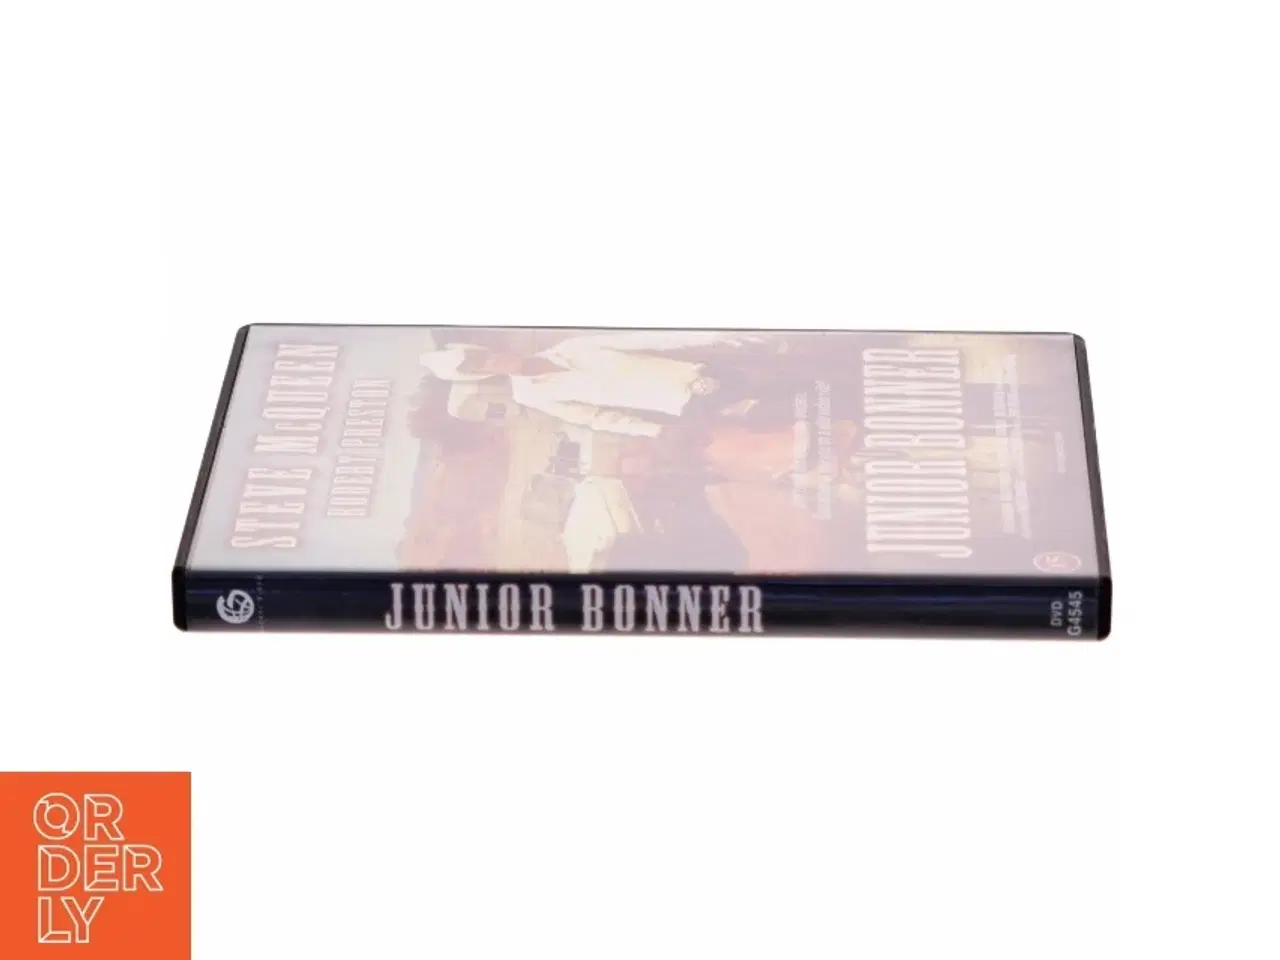 Billede 2 - Junior Bonner DVD fra Scanbox